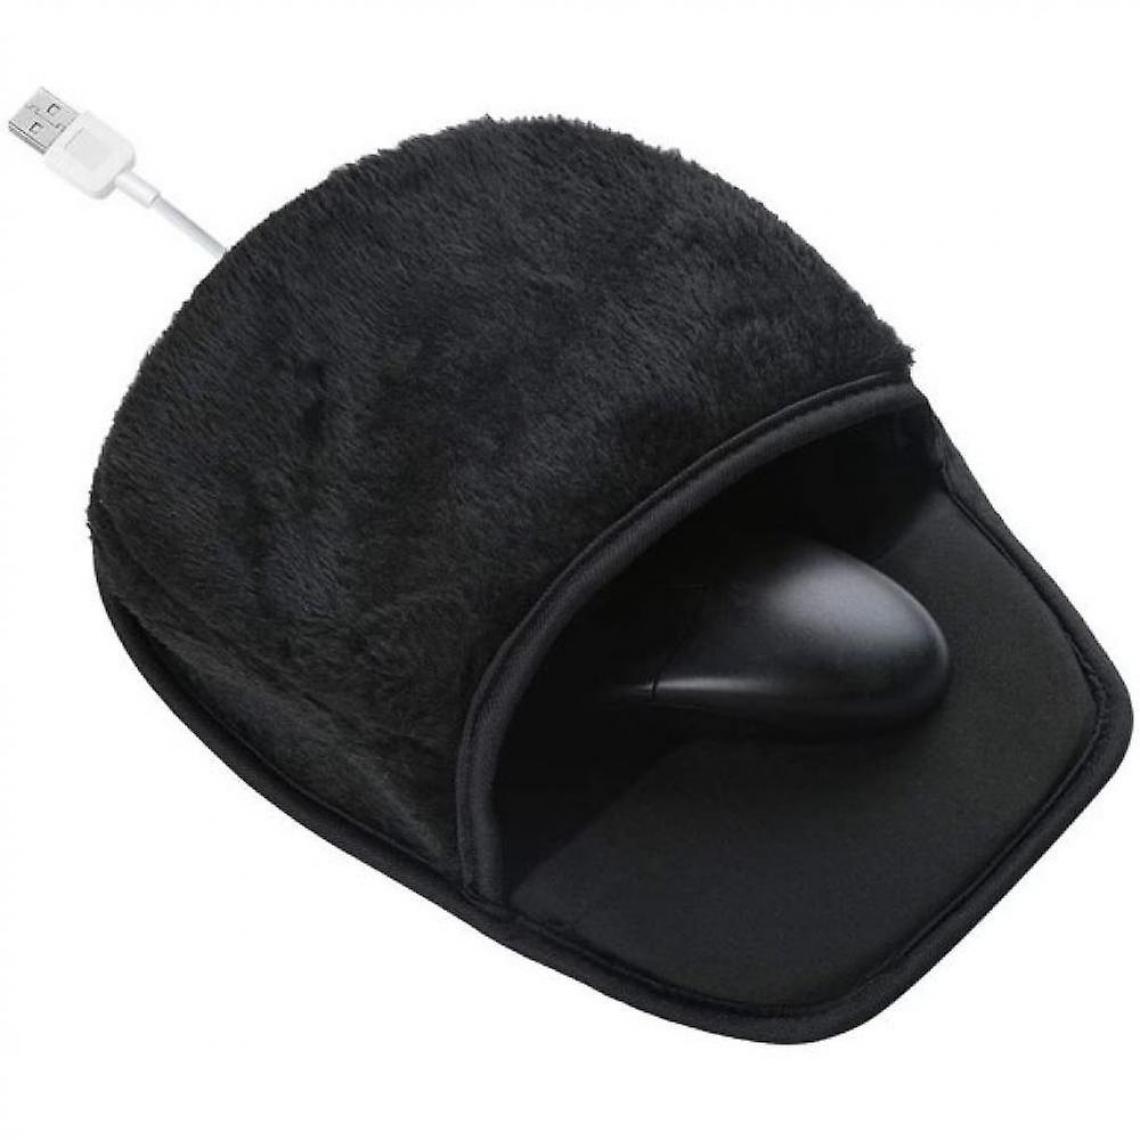 Universal - Tapis de souris thermique USB universel - grand tapis de chauffage électrique, (noir) - Tapis de souris